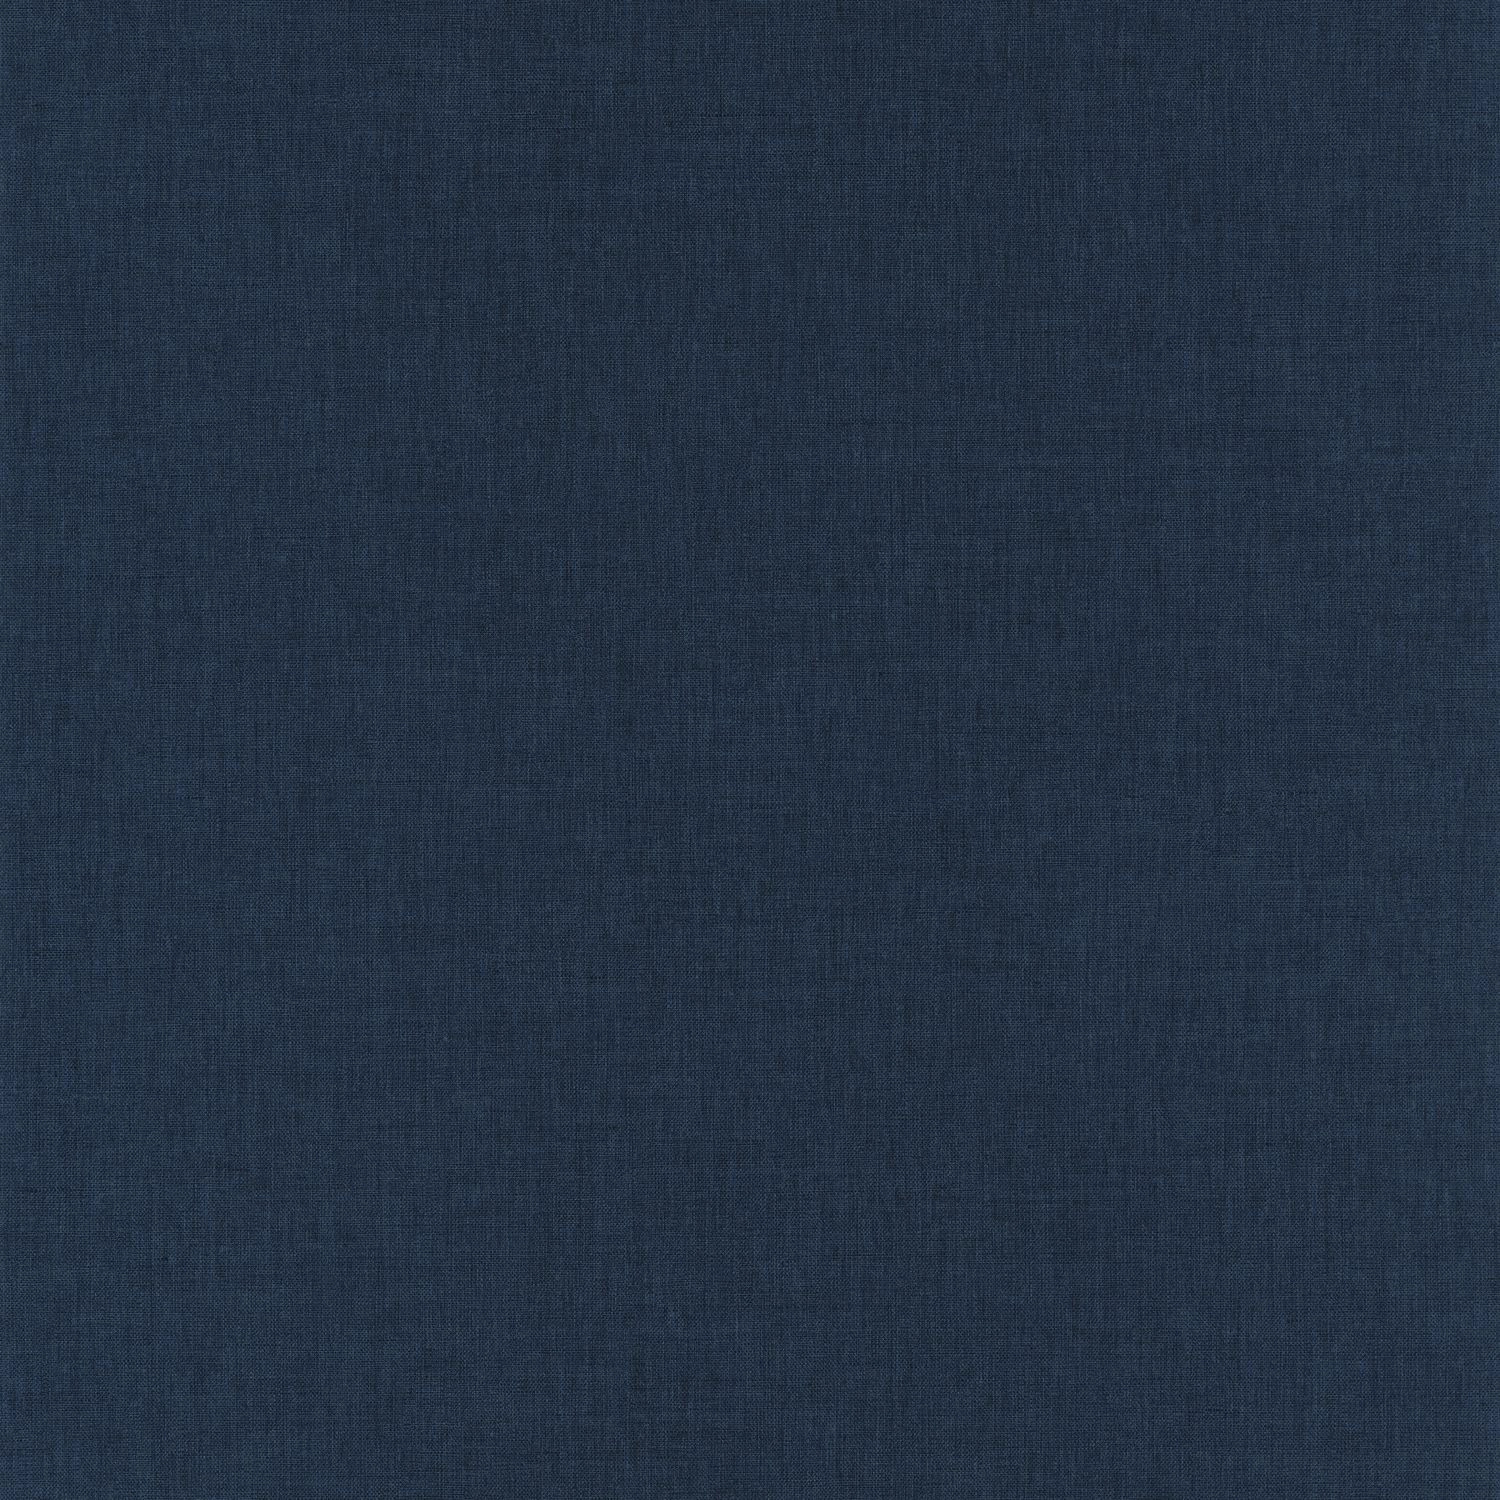 Szövethatású sötétkék egyszínű tapéta textil struktúrával